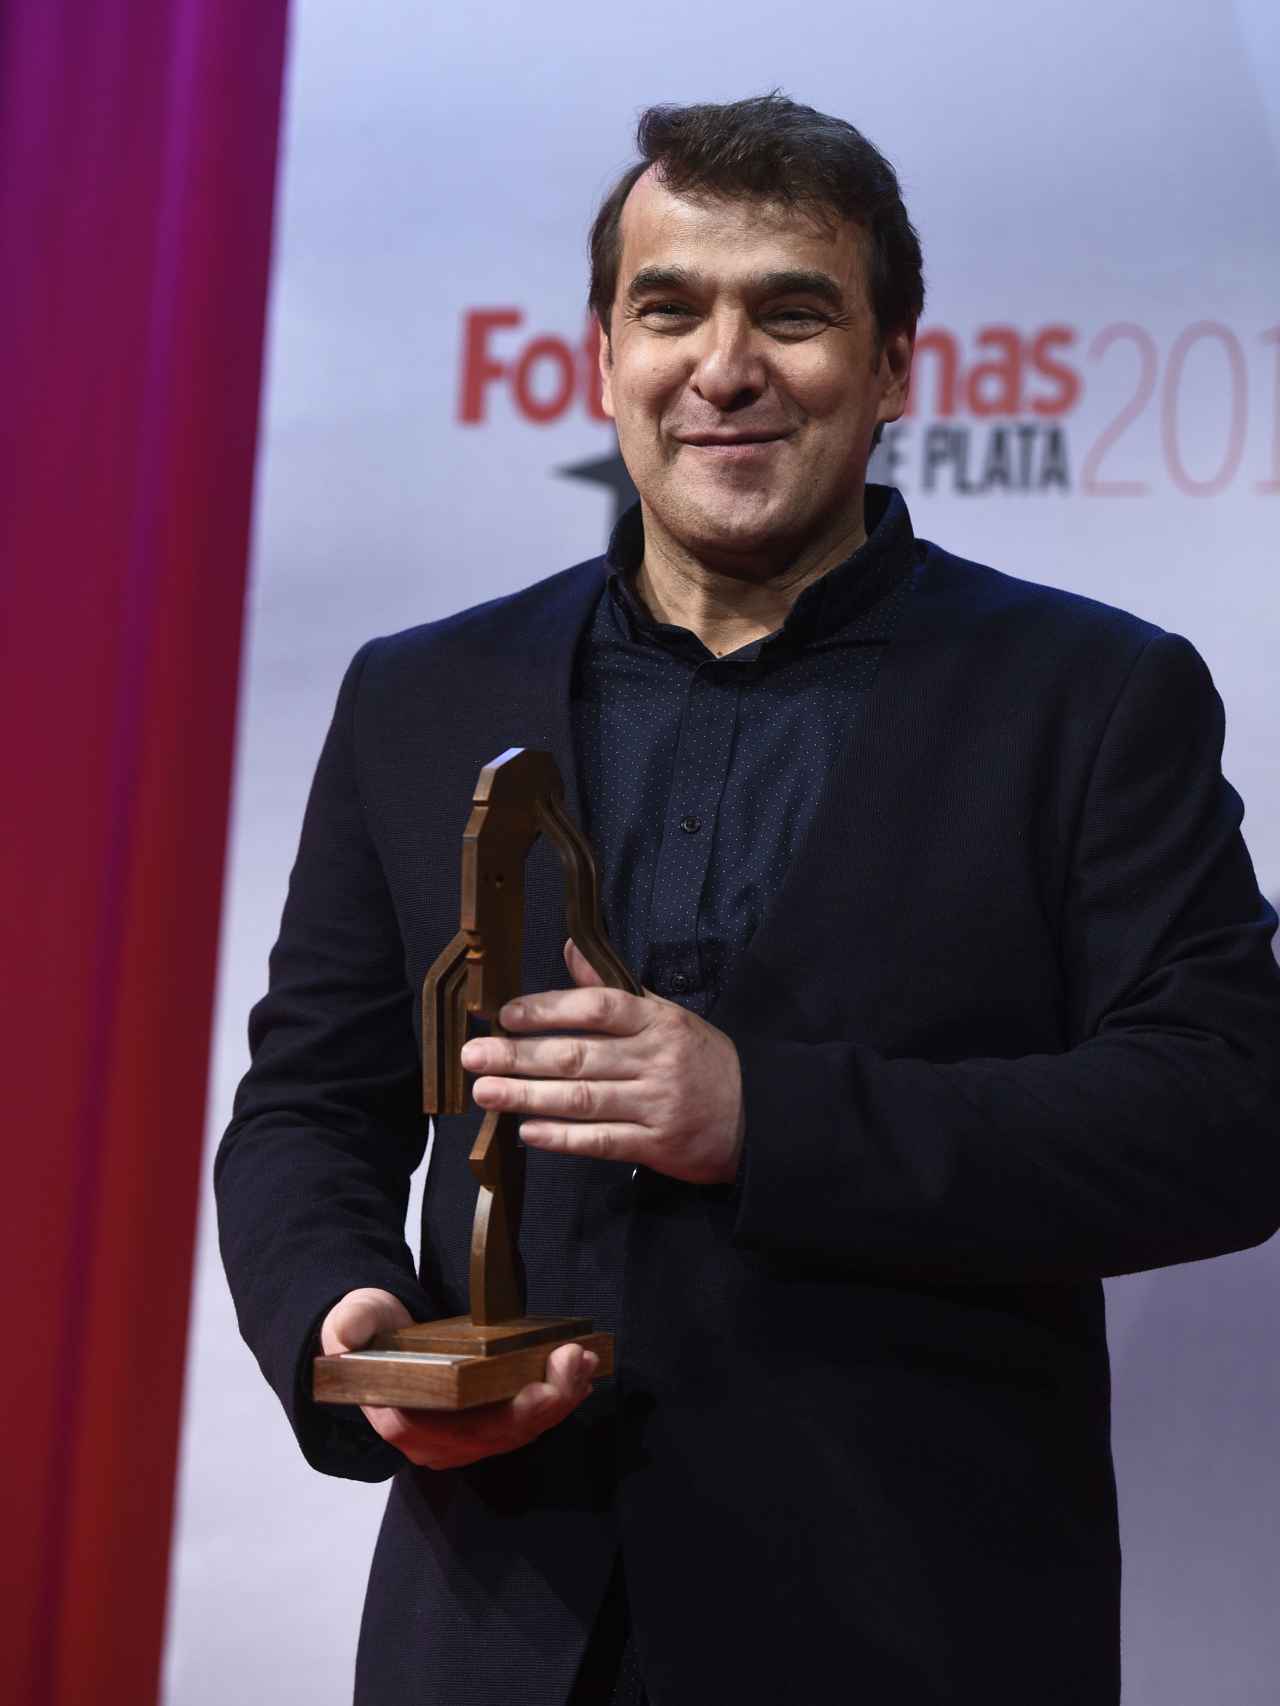 Luis Merlo recogiendo el premio Fotogramas.